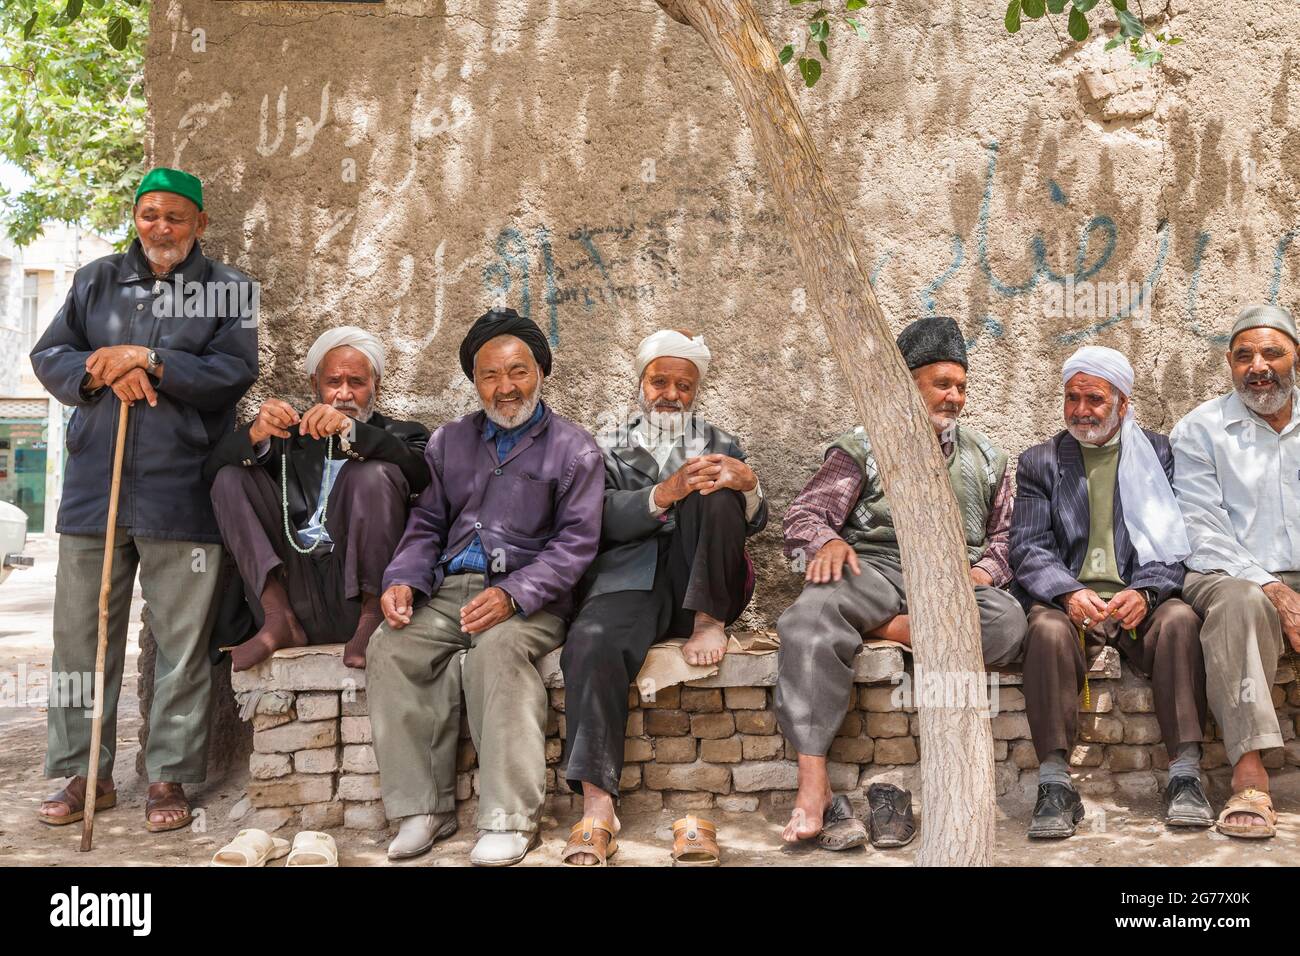 Vecchi amici che siedono e riposano sotto l'ombra dell'albero, Tus(Tous), sobborgo di Mashhad, Provincia di Razavi Khorasan, Iran, Persia, Asia occidentale, Asia Foto Stock